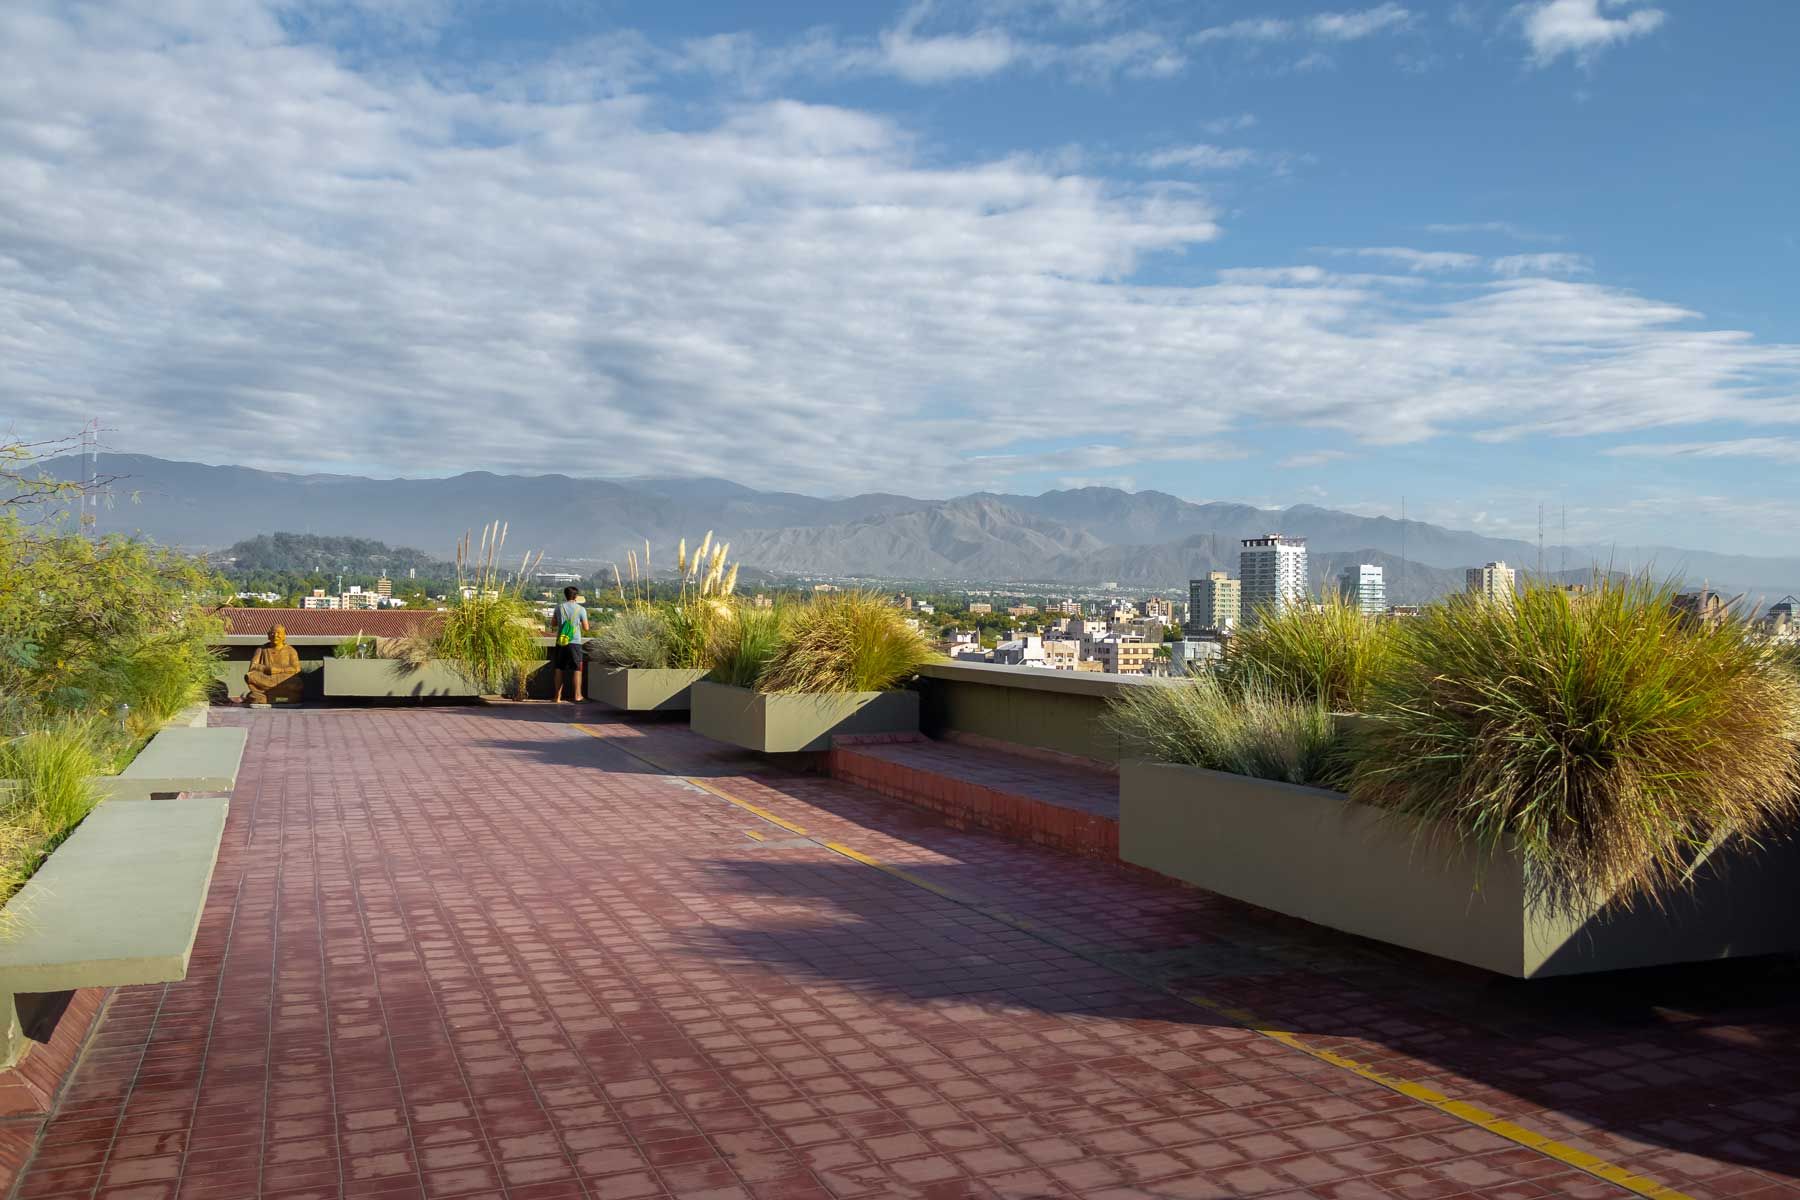 Aussichtspunkt Terrace Gardens (Terraza Jardin Mirador) im Rathaus von Mendoza (Gemeinde) - Mendoza, Argentinien